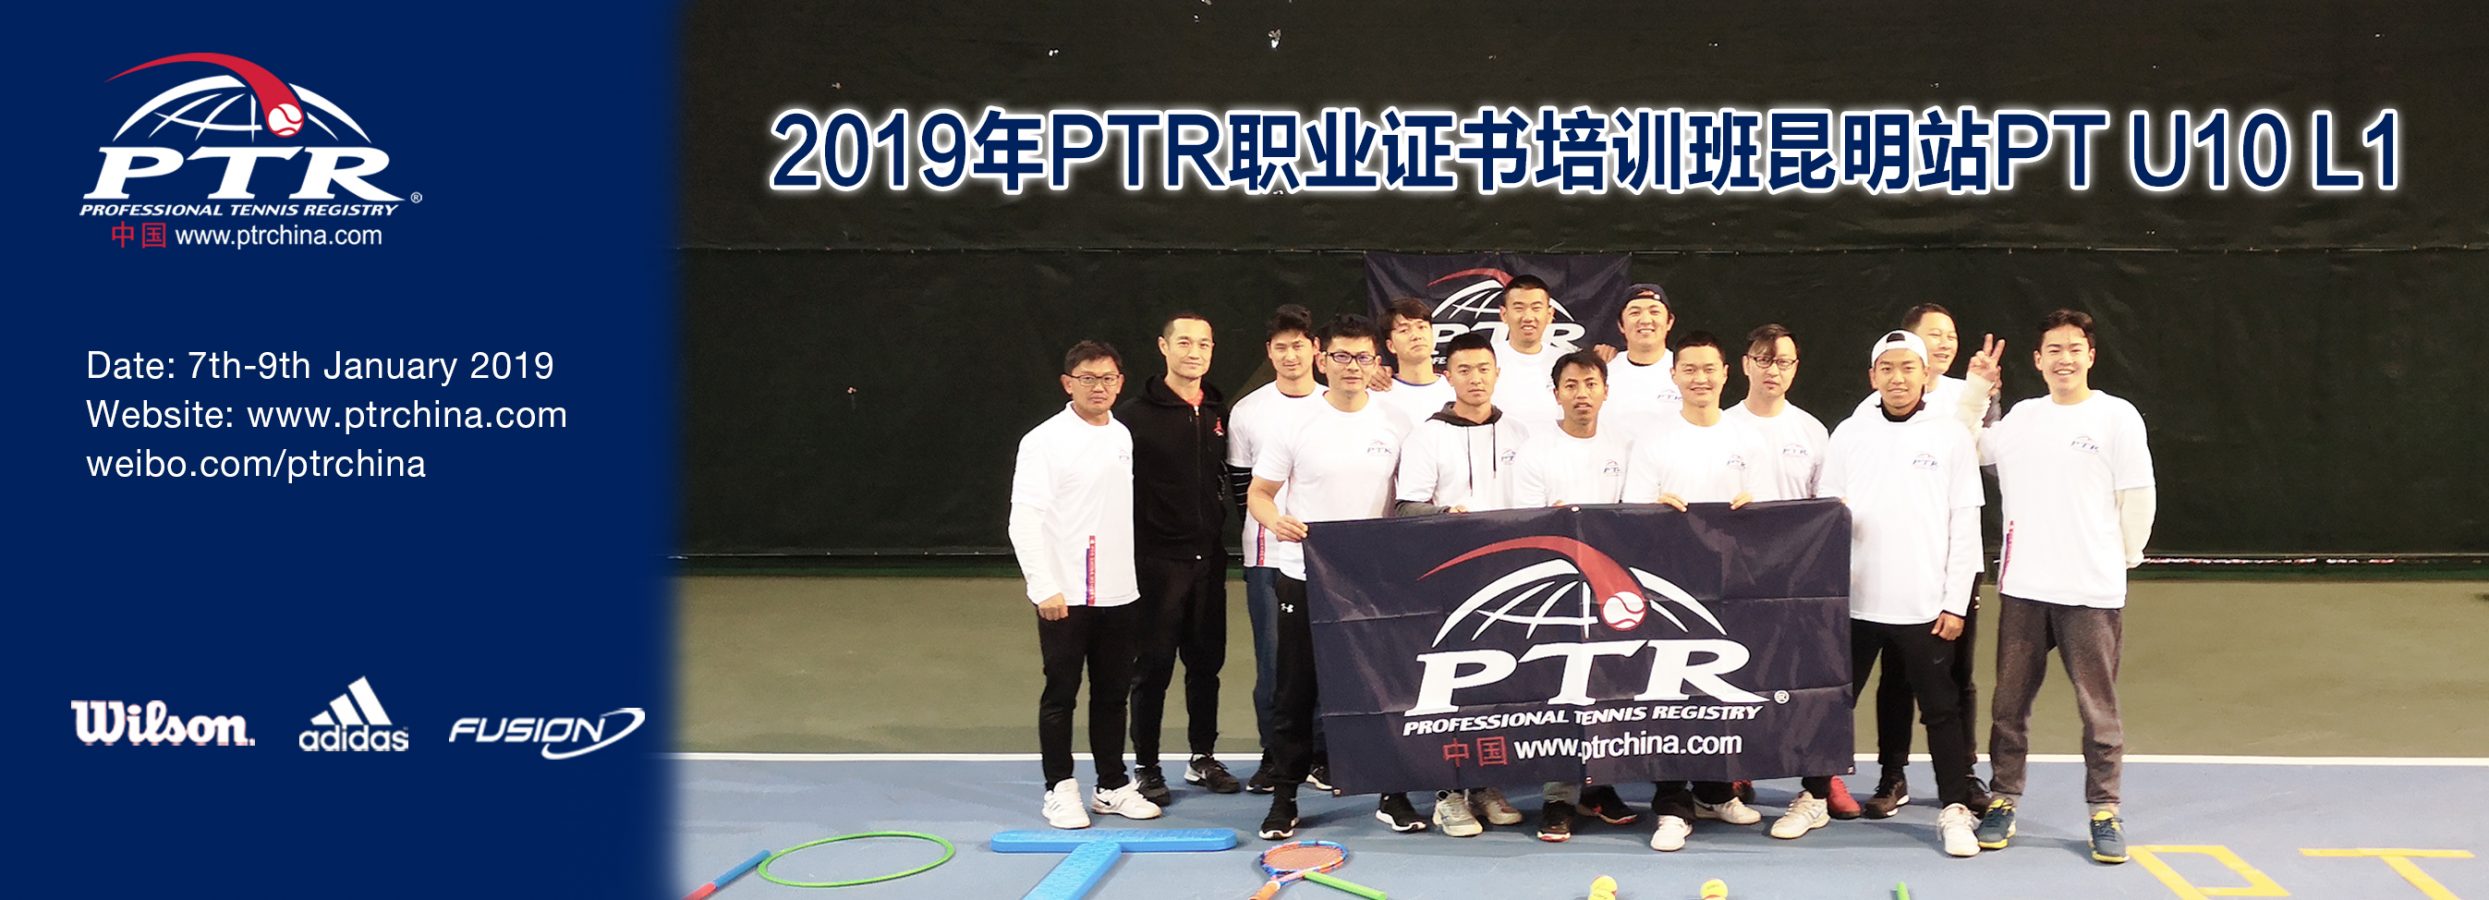 2019 PTR PT U10 L1青少年网球体能师培训昆明站圆满结业！